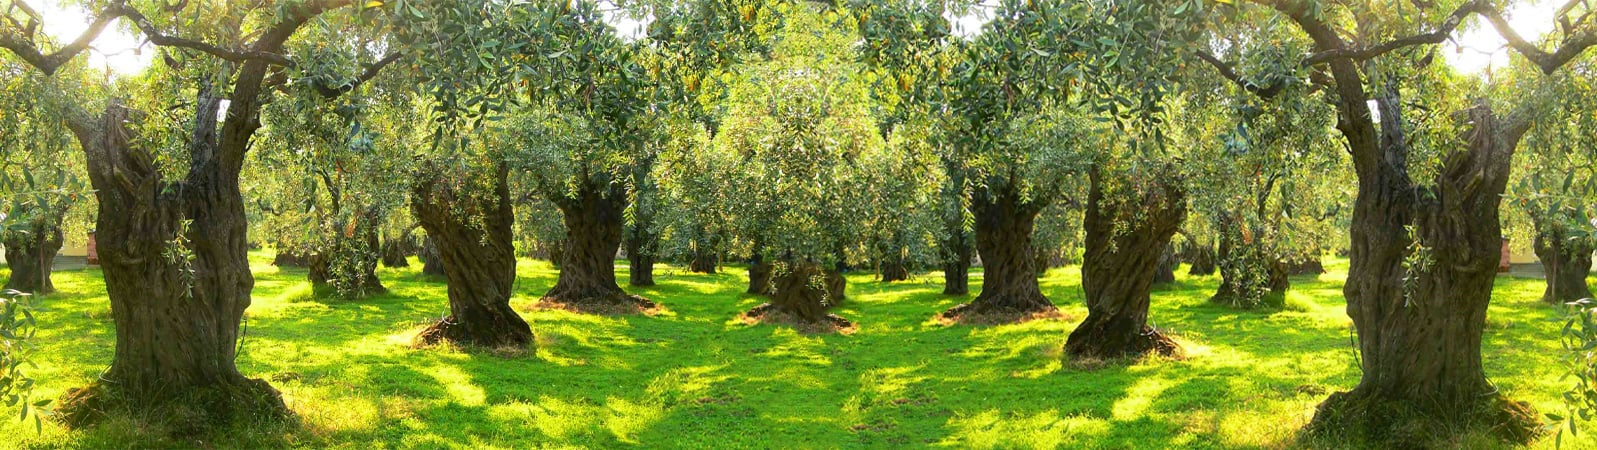 Ölümsüz Ağaç Zeytin - Kavlak Zeytin - Kavlak Zeytinyağı | Taş Baskı  Zeytinyağı Üretim Tesisleri